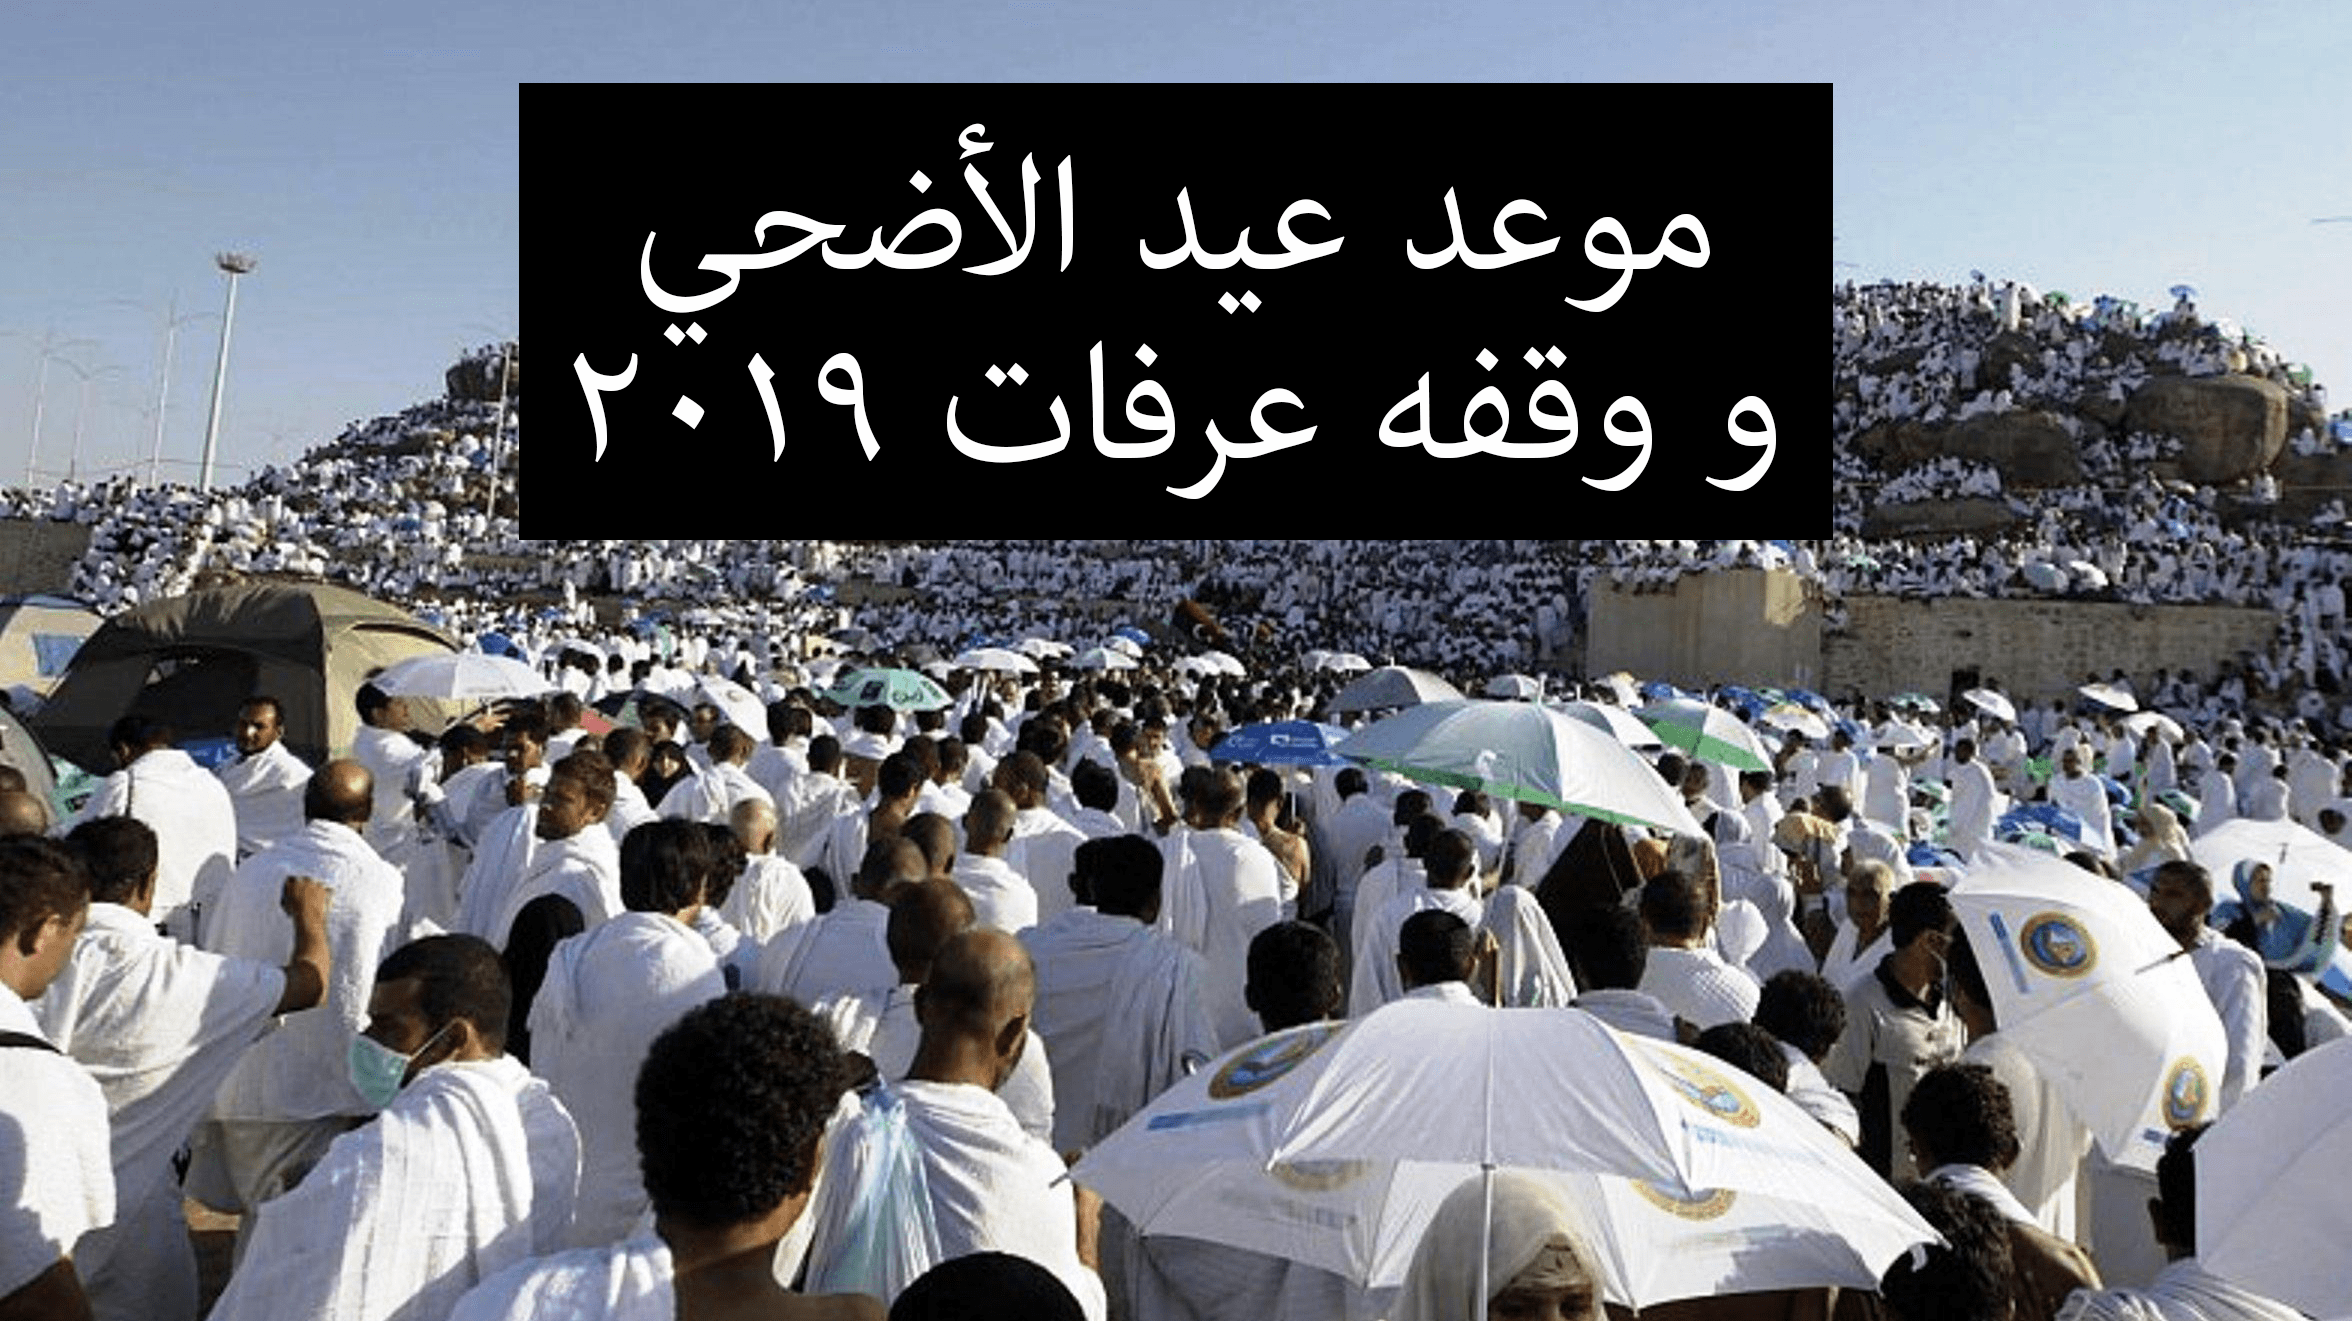 موعد عيد الأضحى في مصر والدول العربية 2019 ميلادي- 1440 هجري